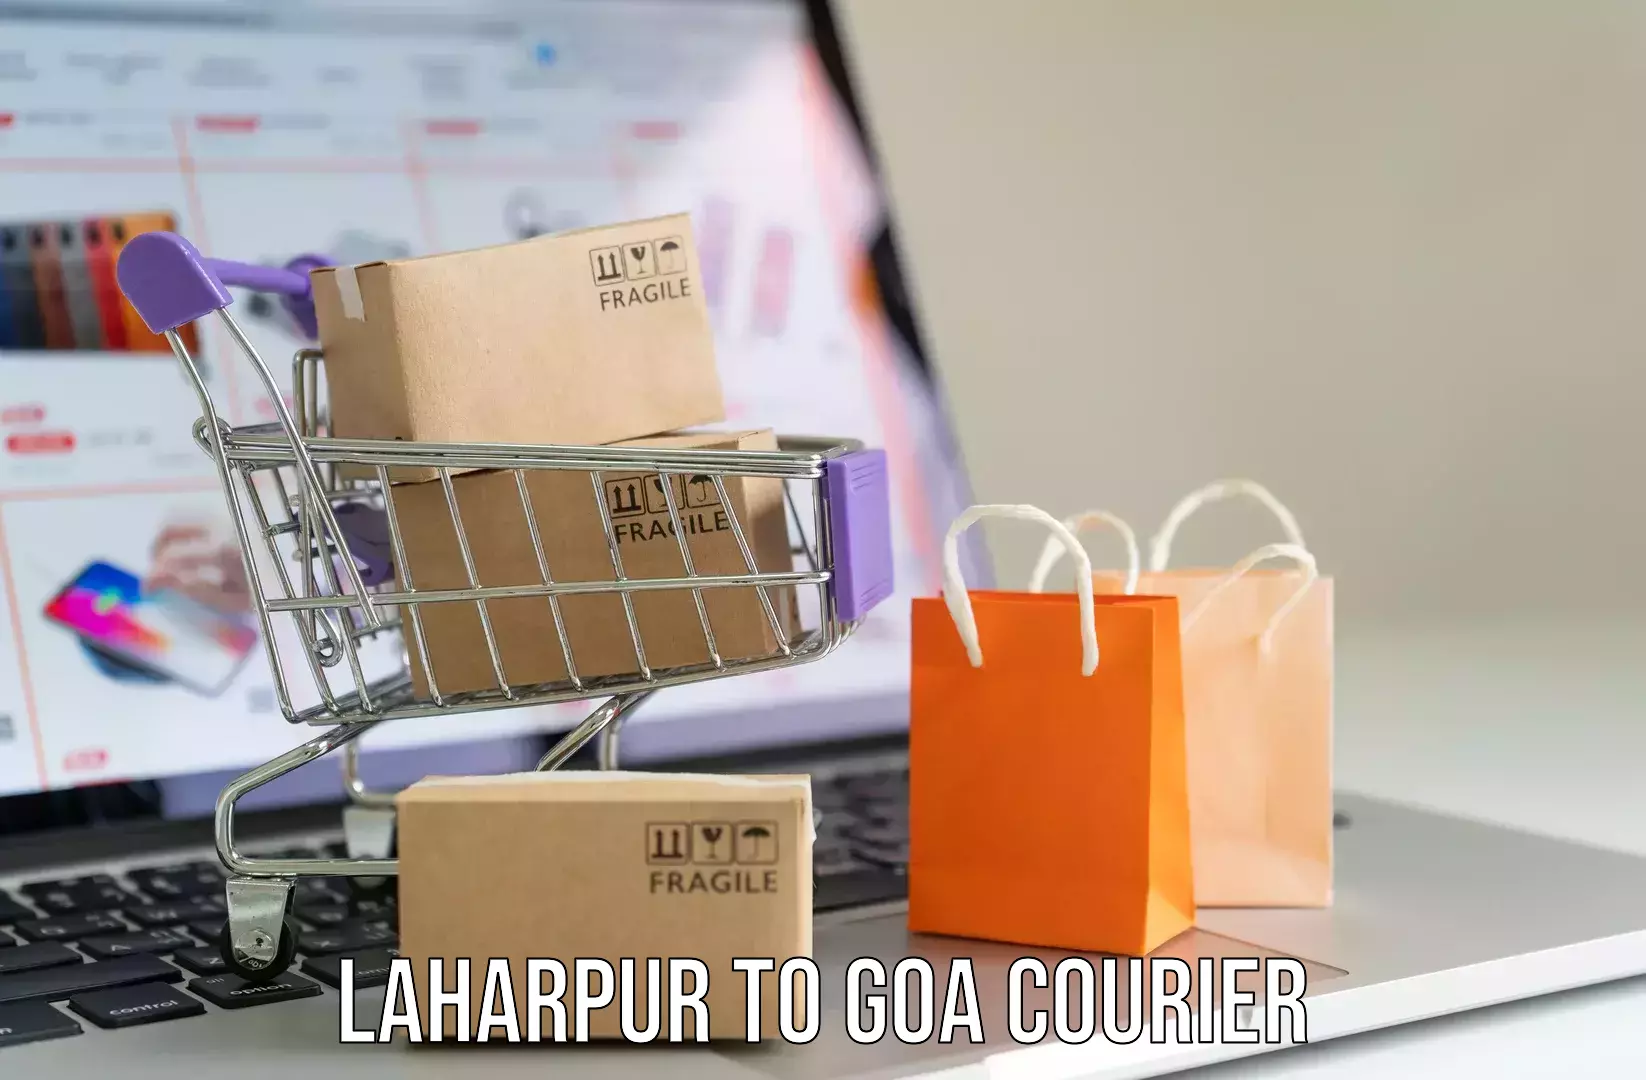 Luggage forwarding service Laharpur to Panaji